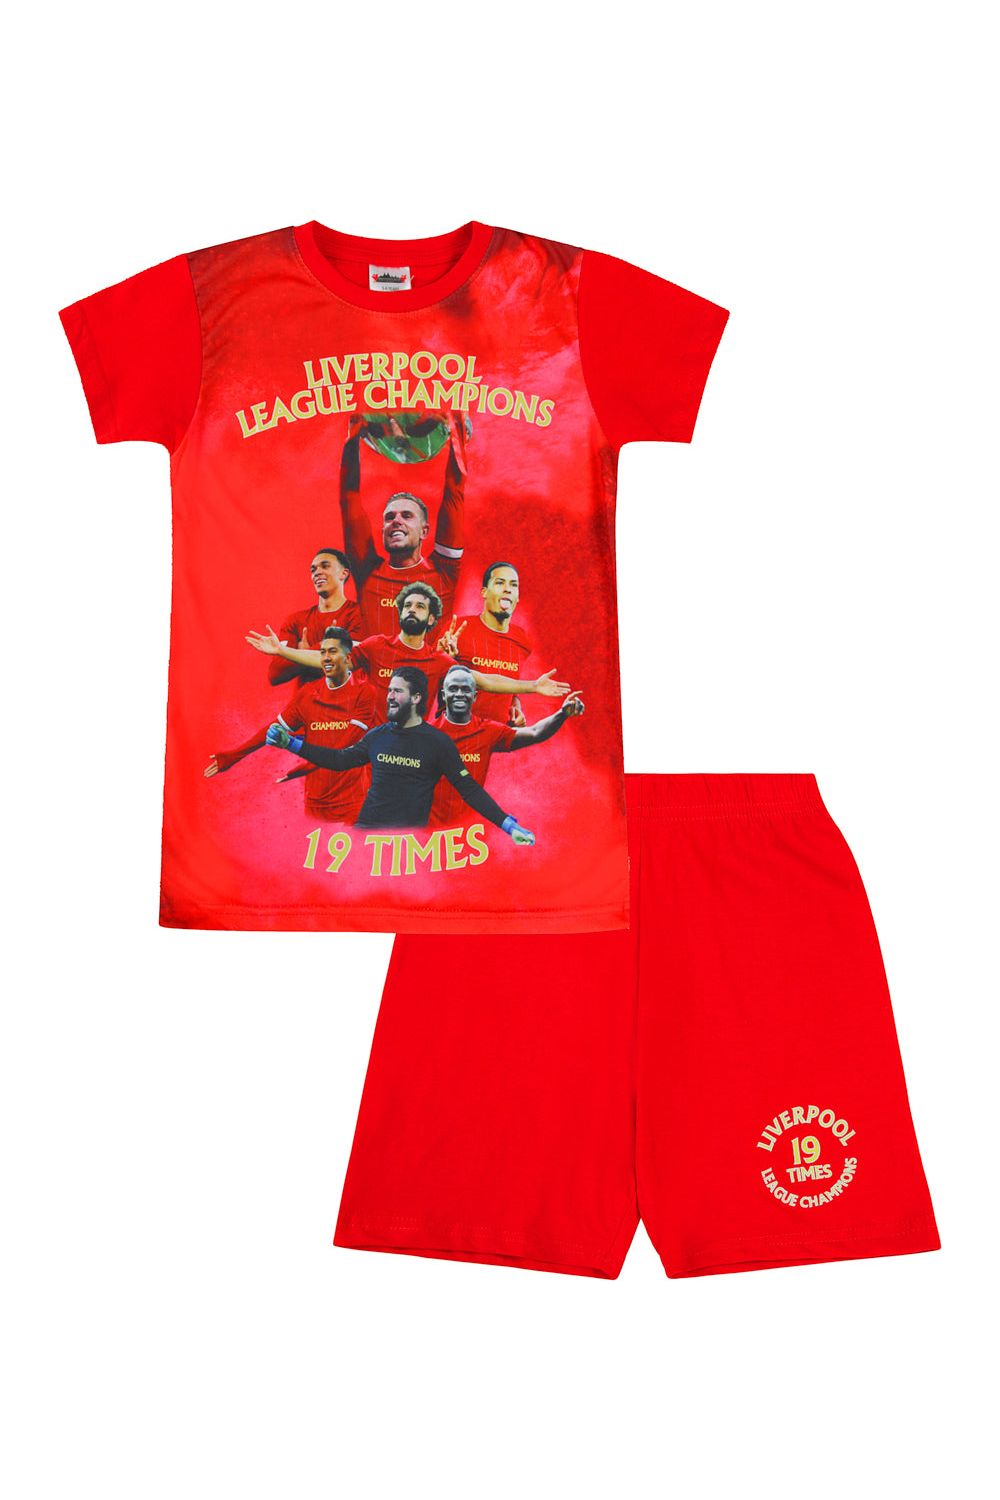 Liverpool Champions Short Pyjamas - Pyjamas.com